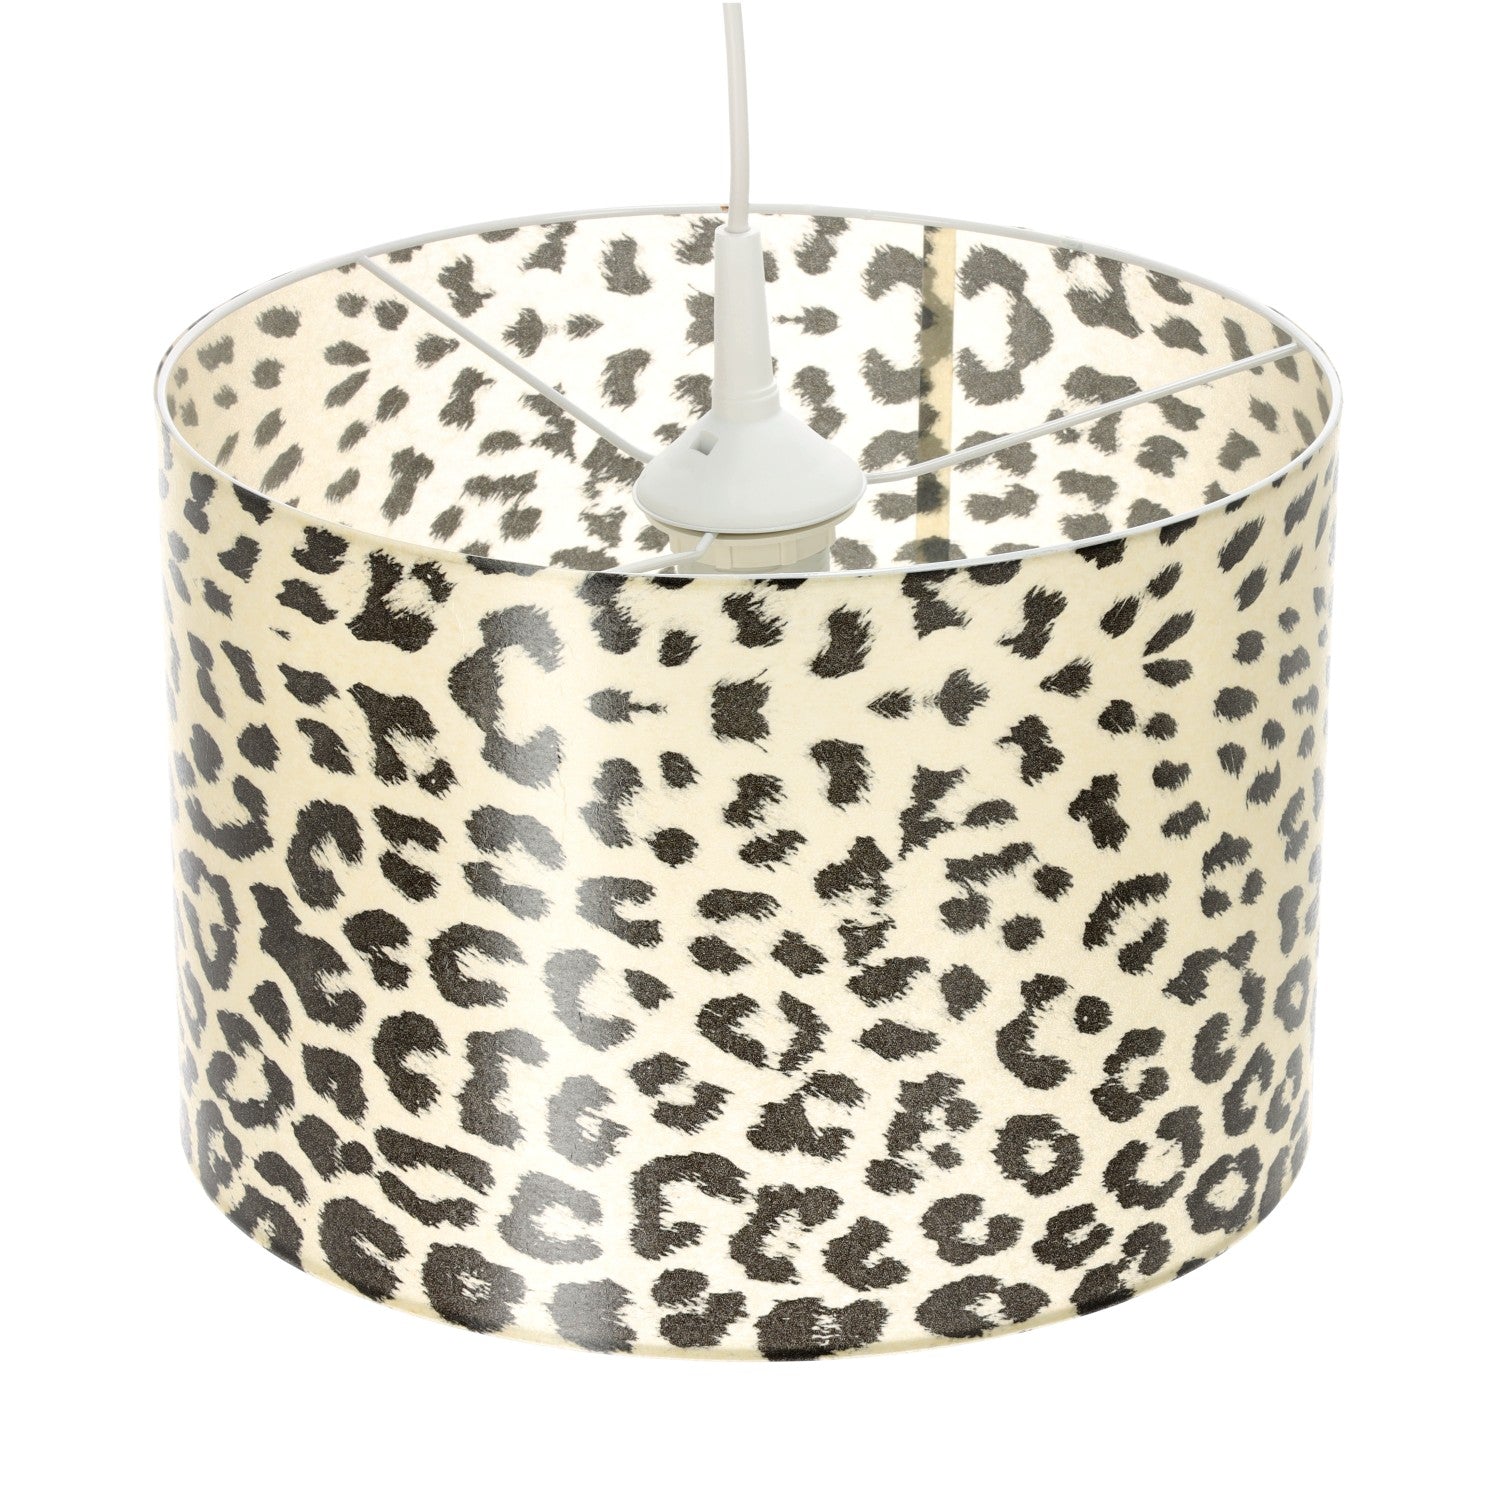 Lampa sufitowa wisząca Gepard w cętki nowoczesny design